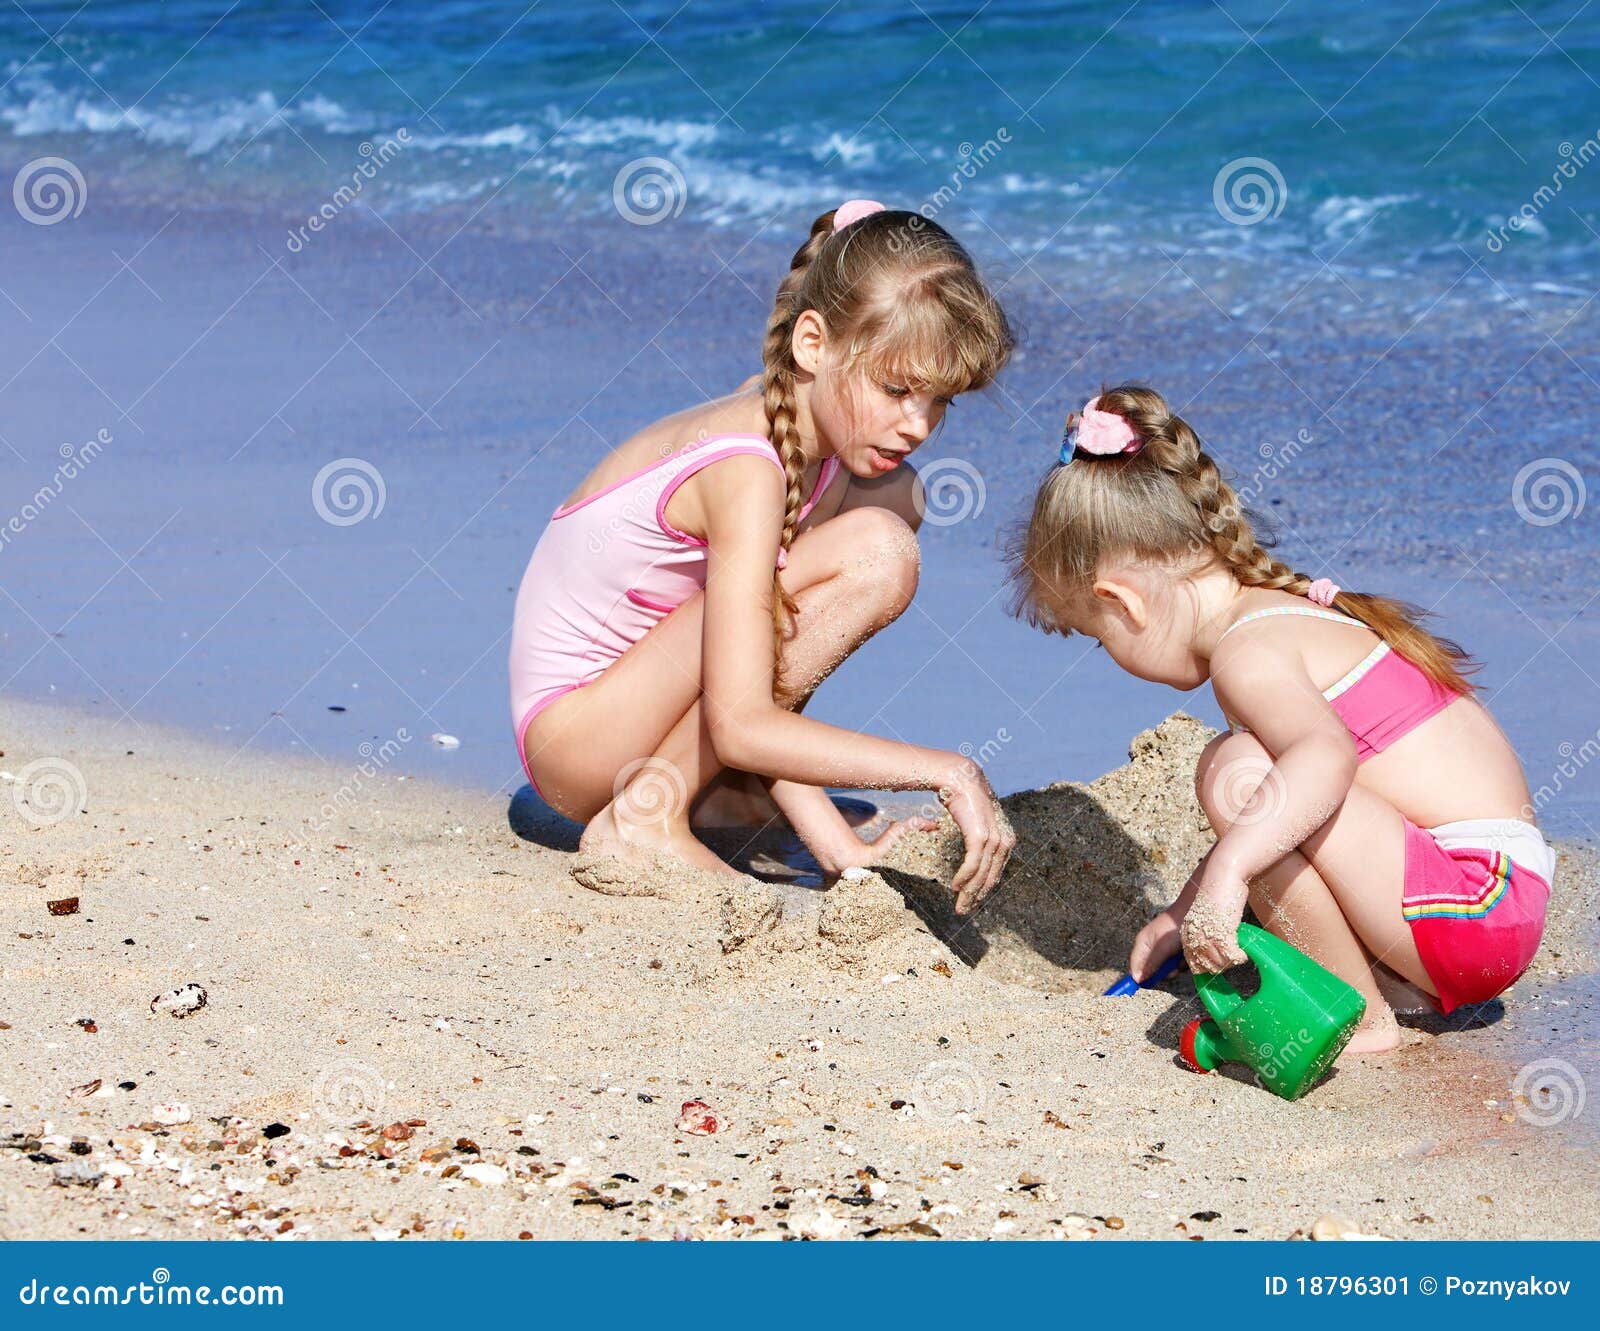 фото дети на голом пляже фото 76